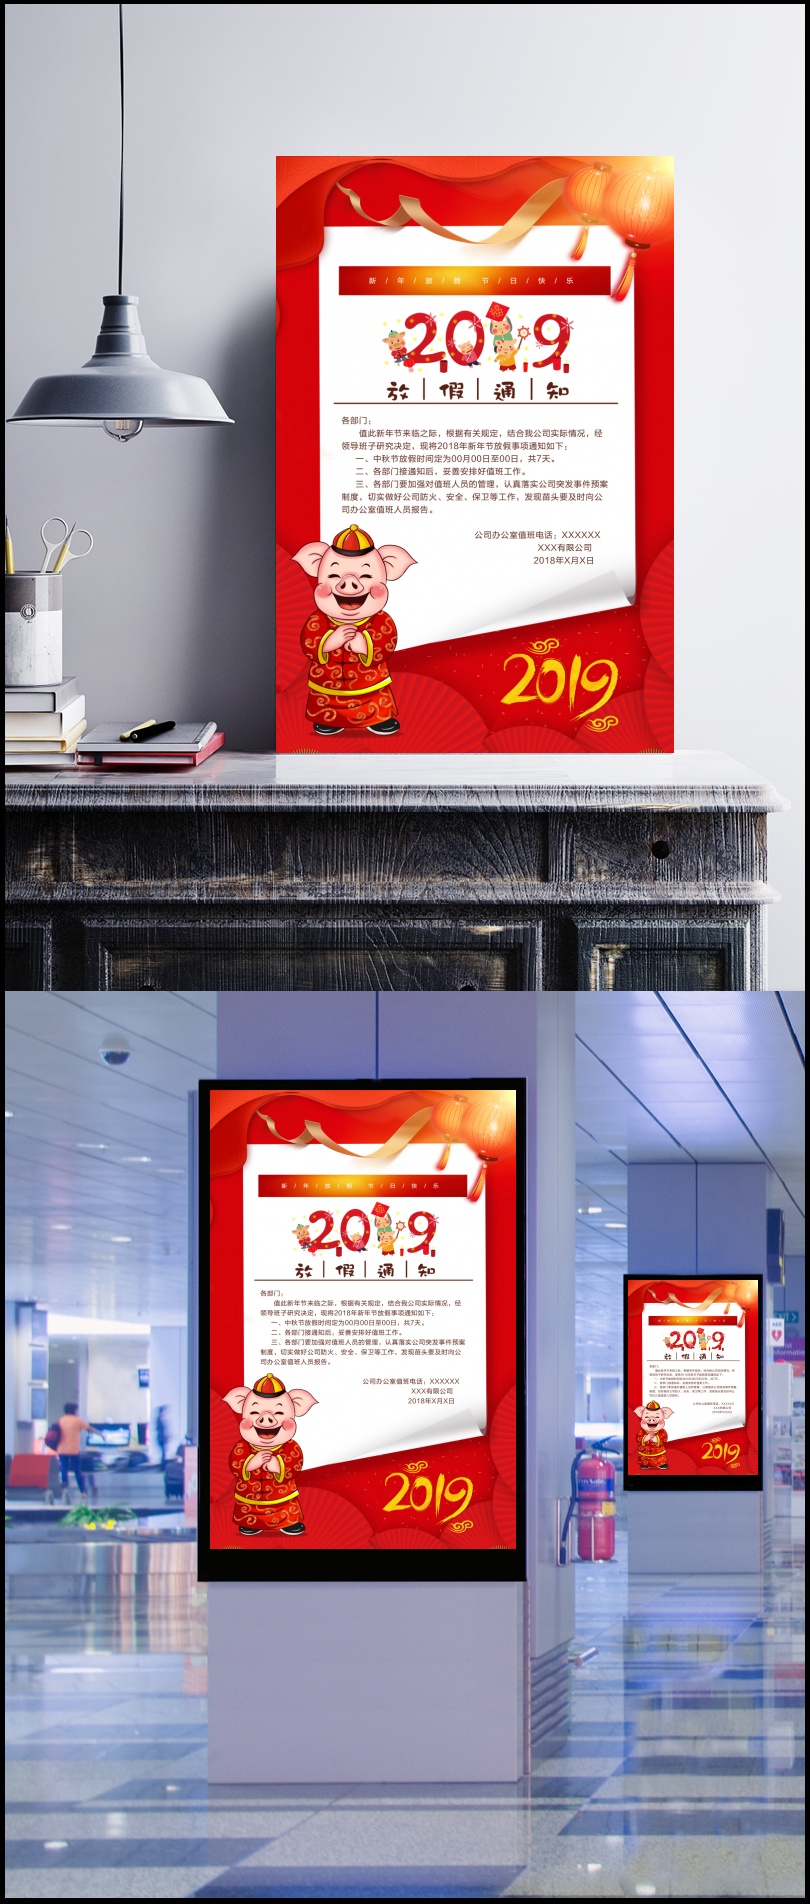 2019新年放假通知海报